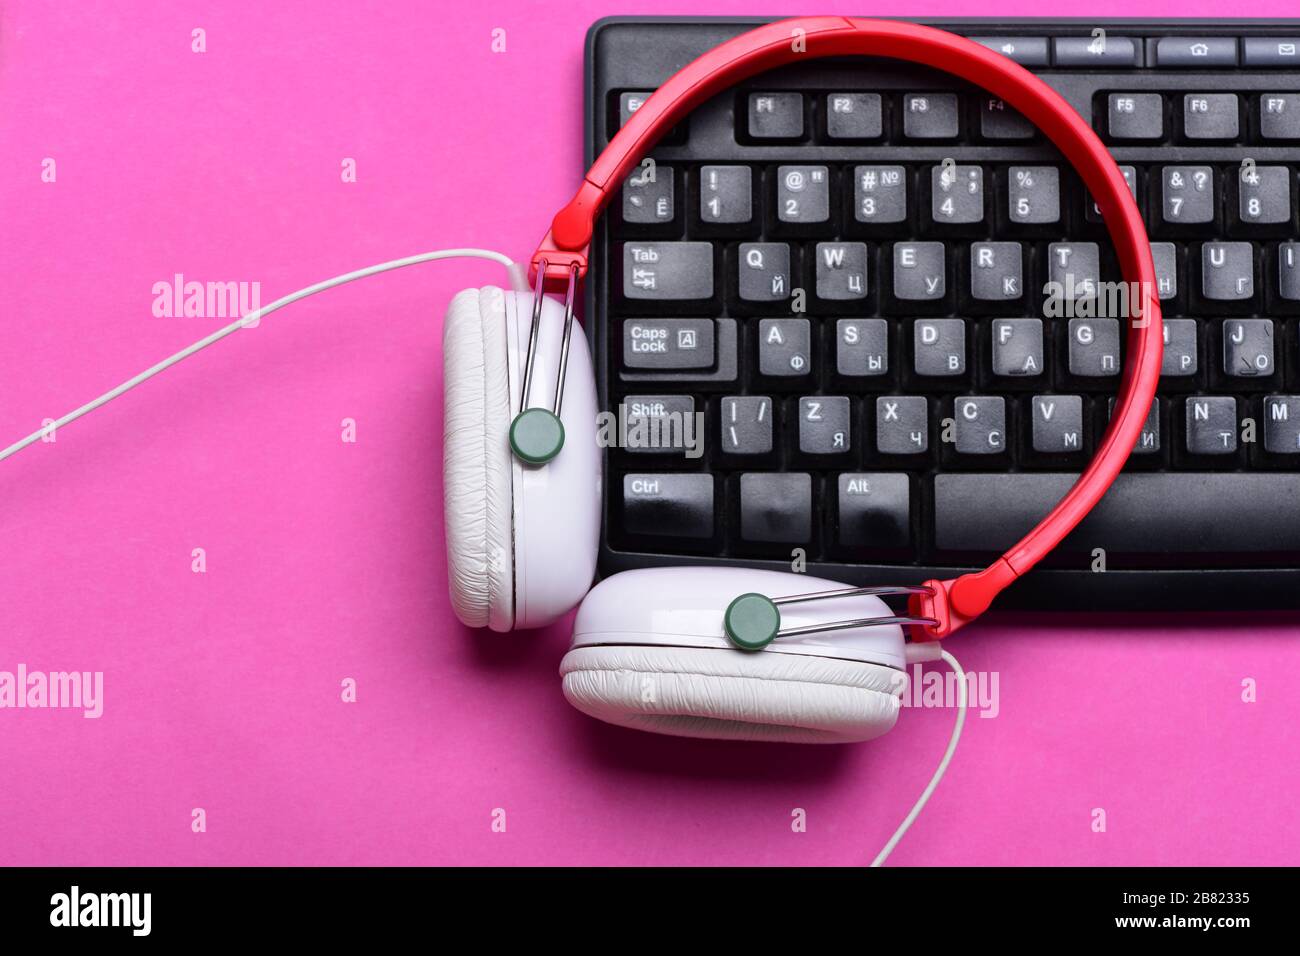 Aparatos electrónicos sobre fondo rosa. Auriculares en colores rojo y  blanco con teclado de ordenador. Grabación de sonido y tecnología. Concepto  de música y equipamiento digital. Auriculares y teclado negro Fotografía de